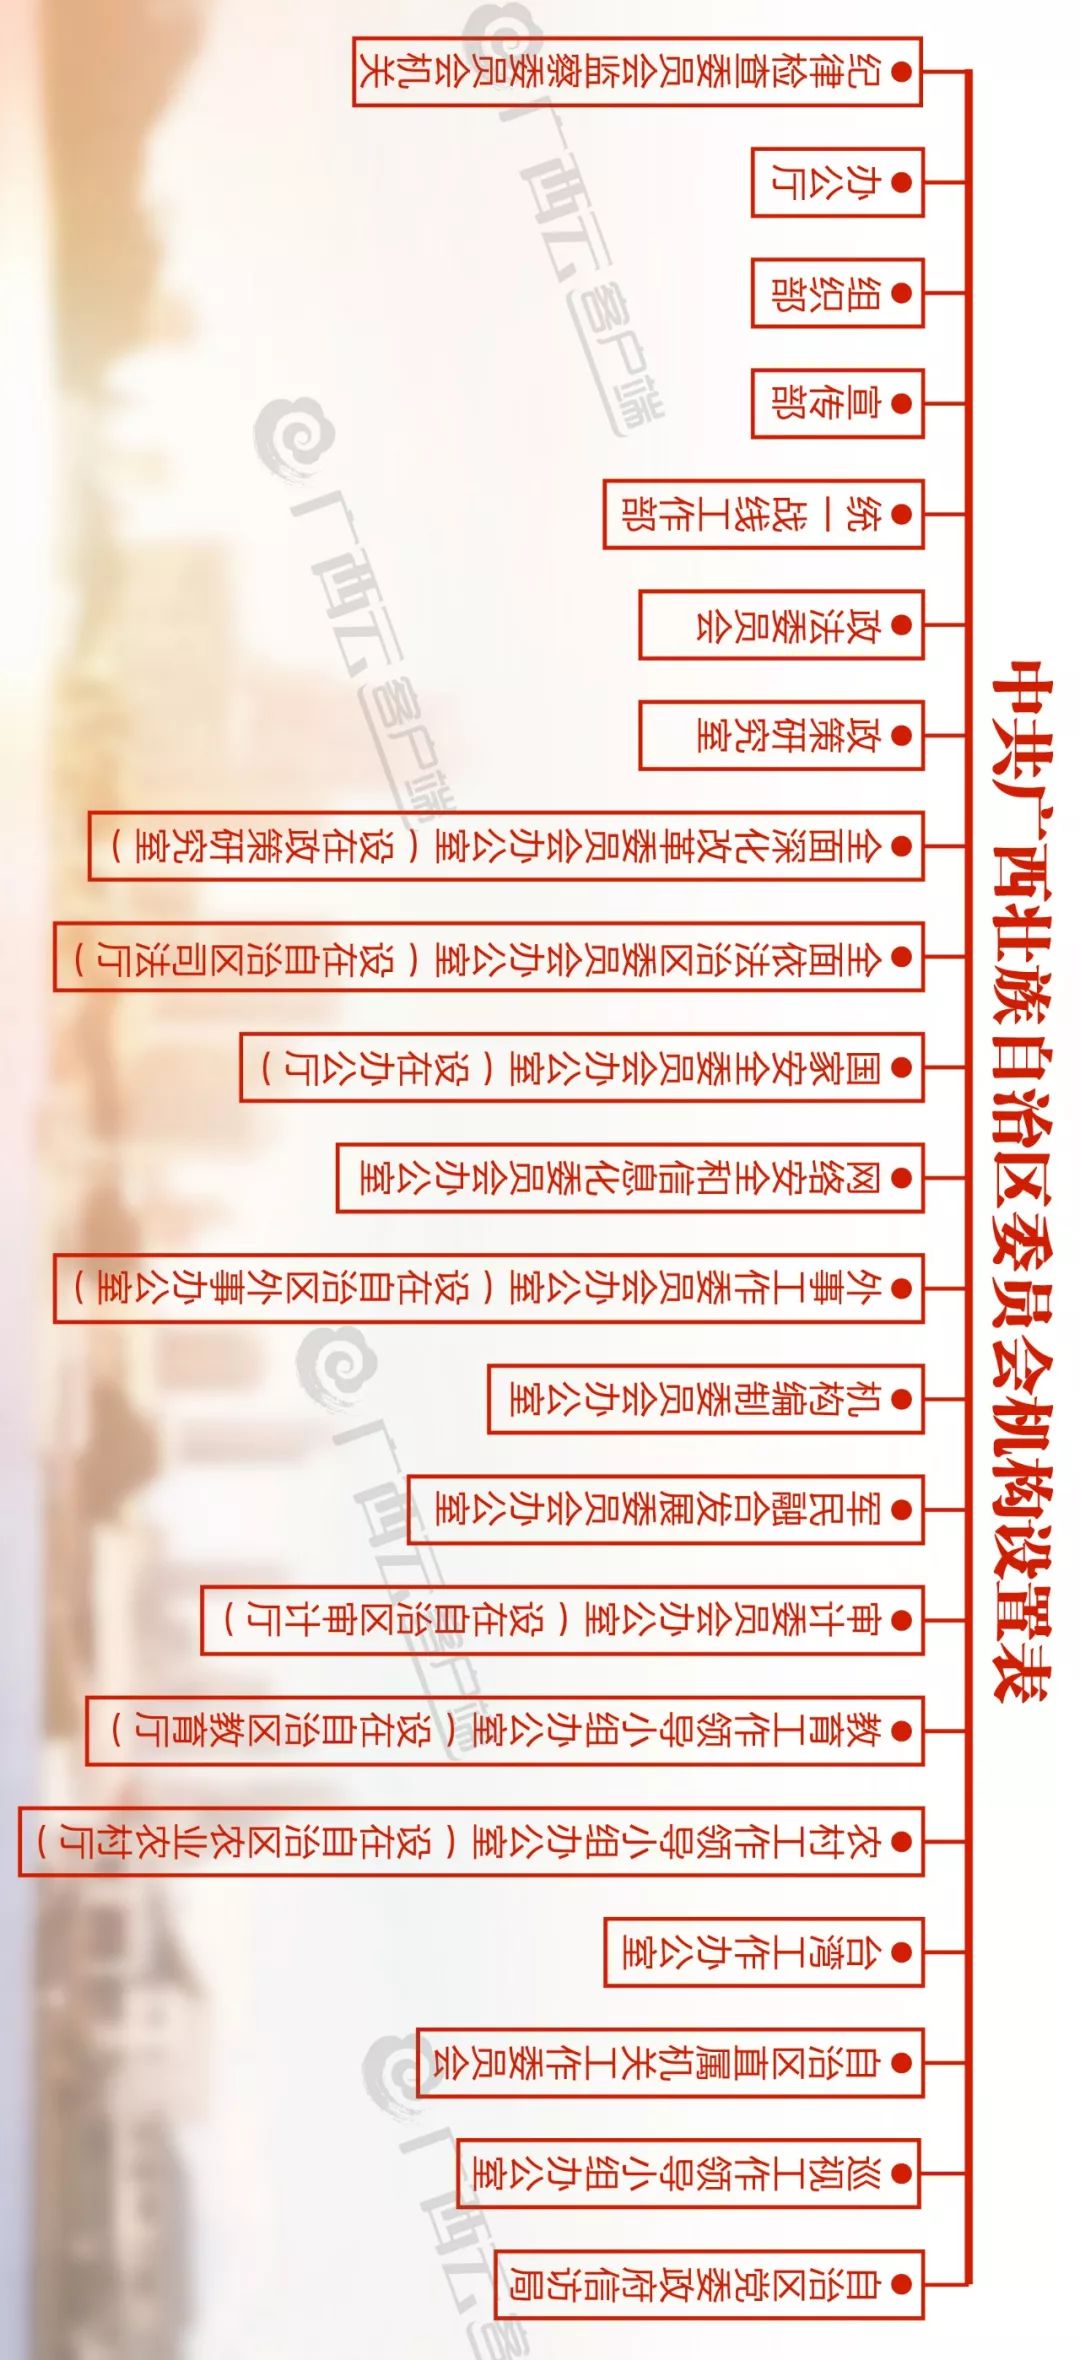 广西机构改革方案公布 一批新部门机构名称11